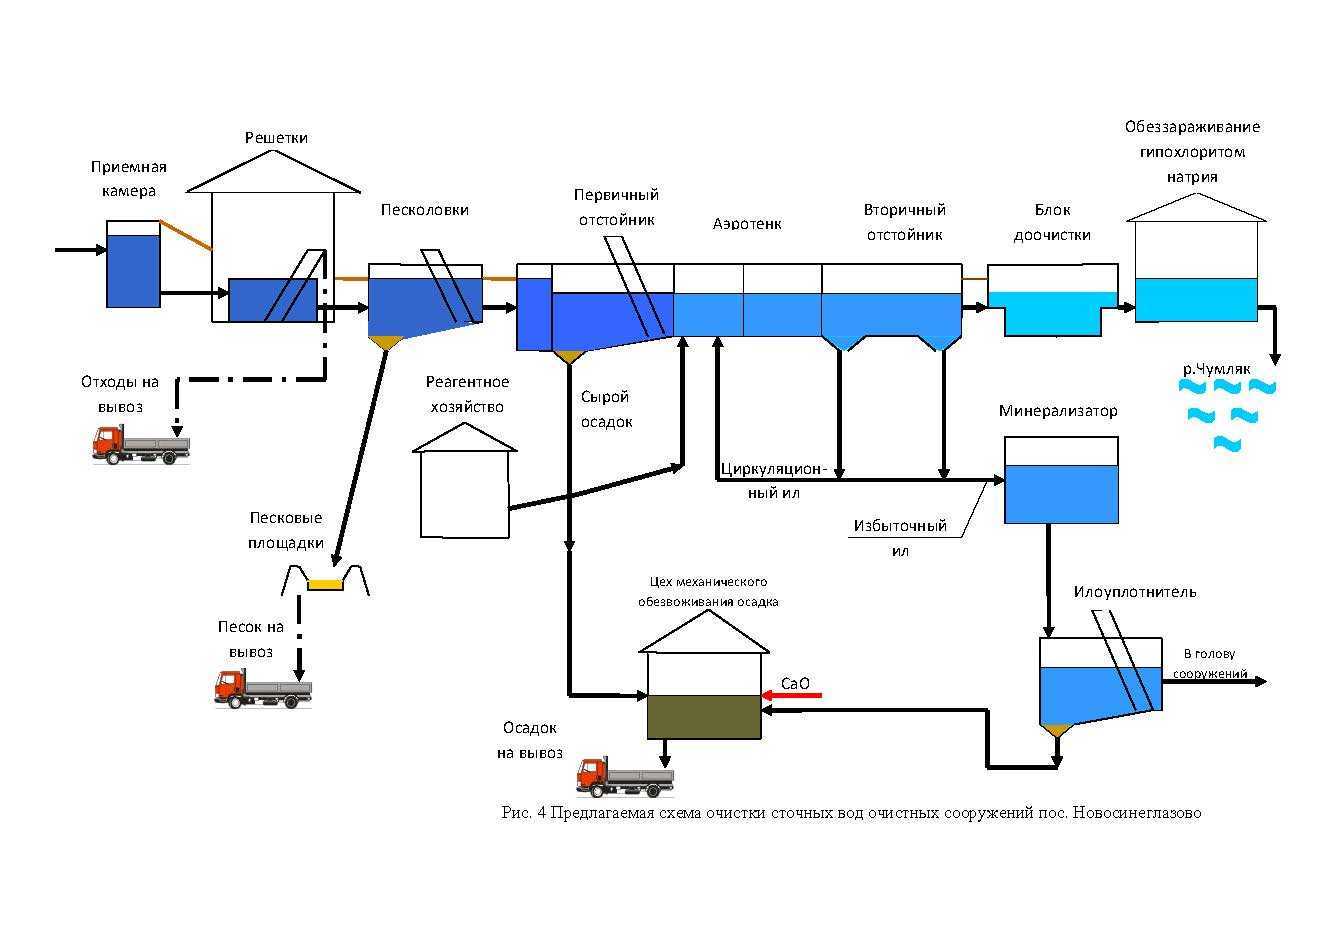 Прочистка ливневой канализации: пошаговая инструкция
прочистка ливневой канализации: пошаговая инструкция